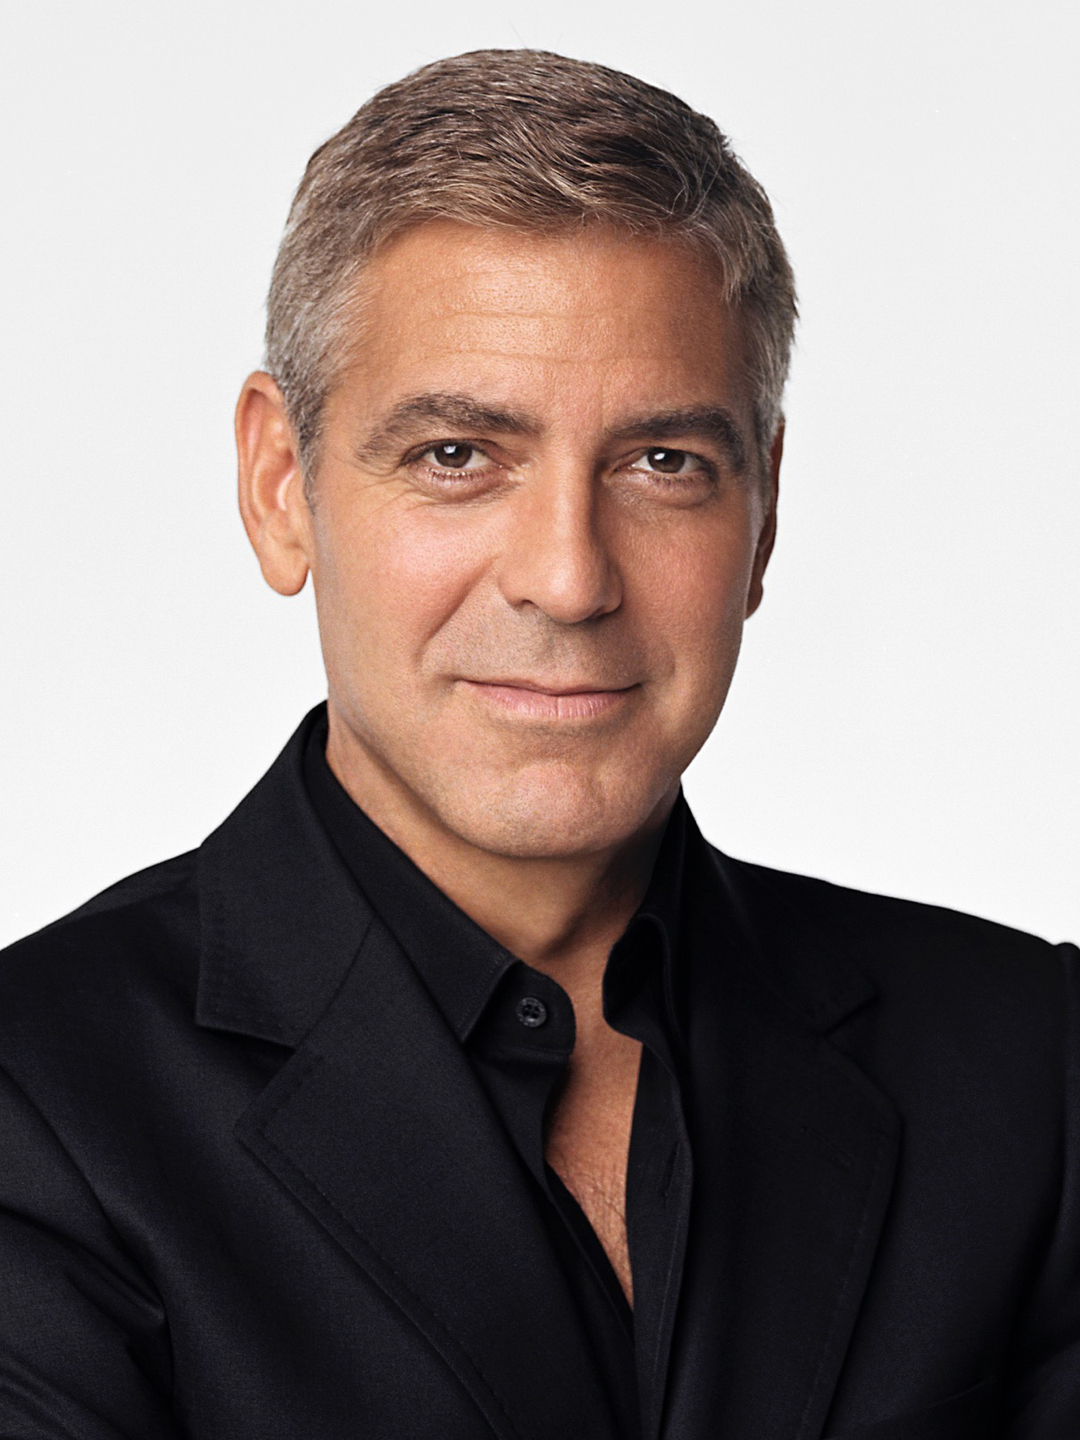 George Clooney age